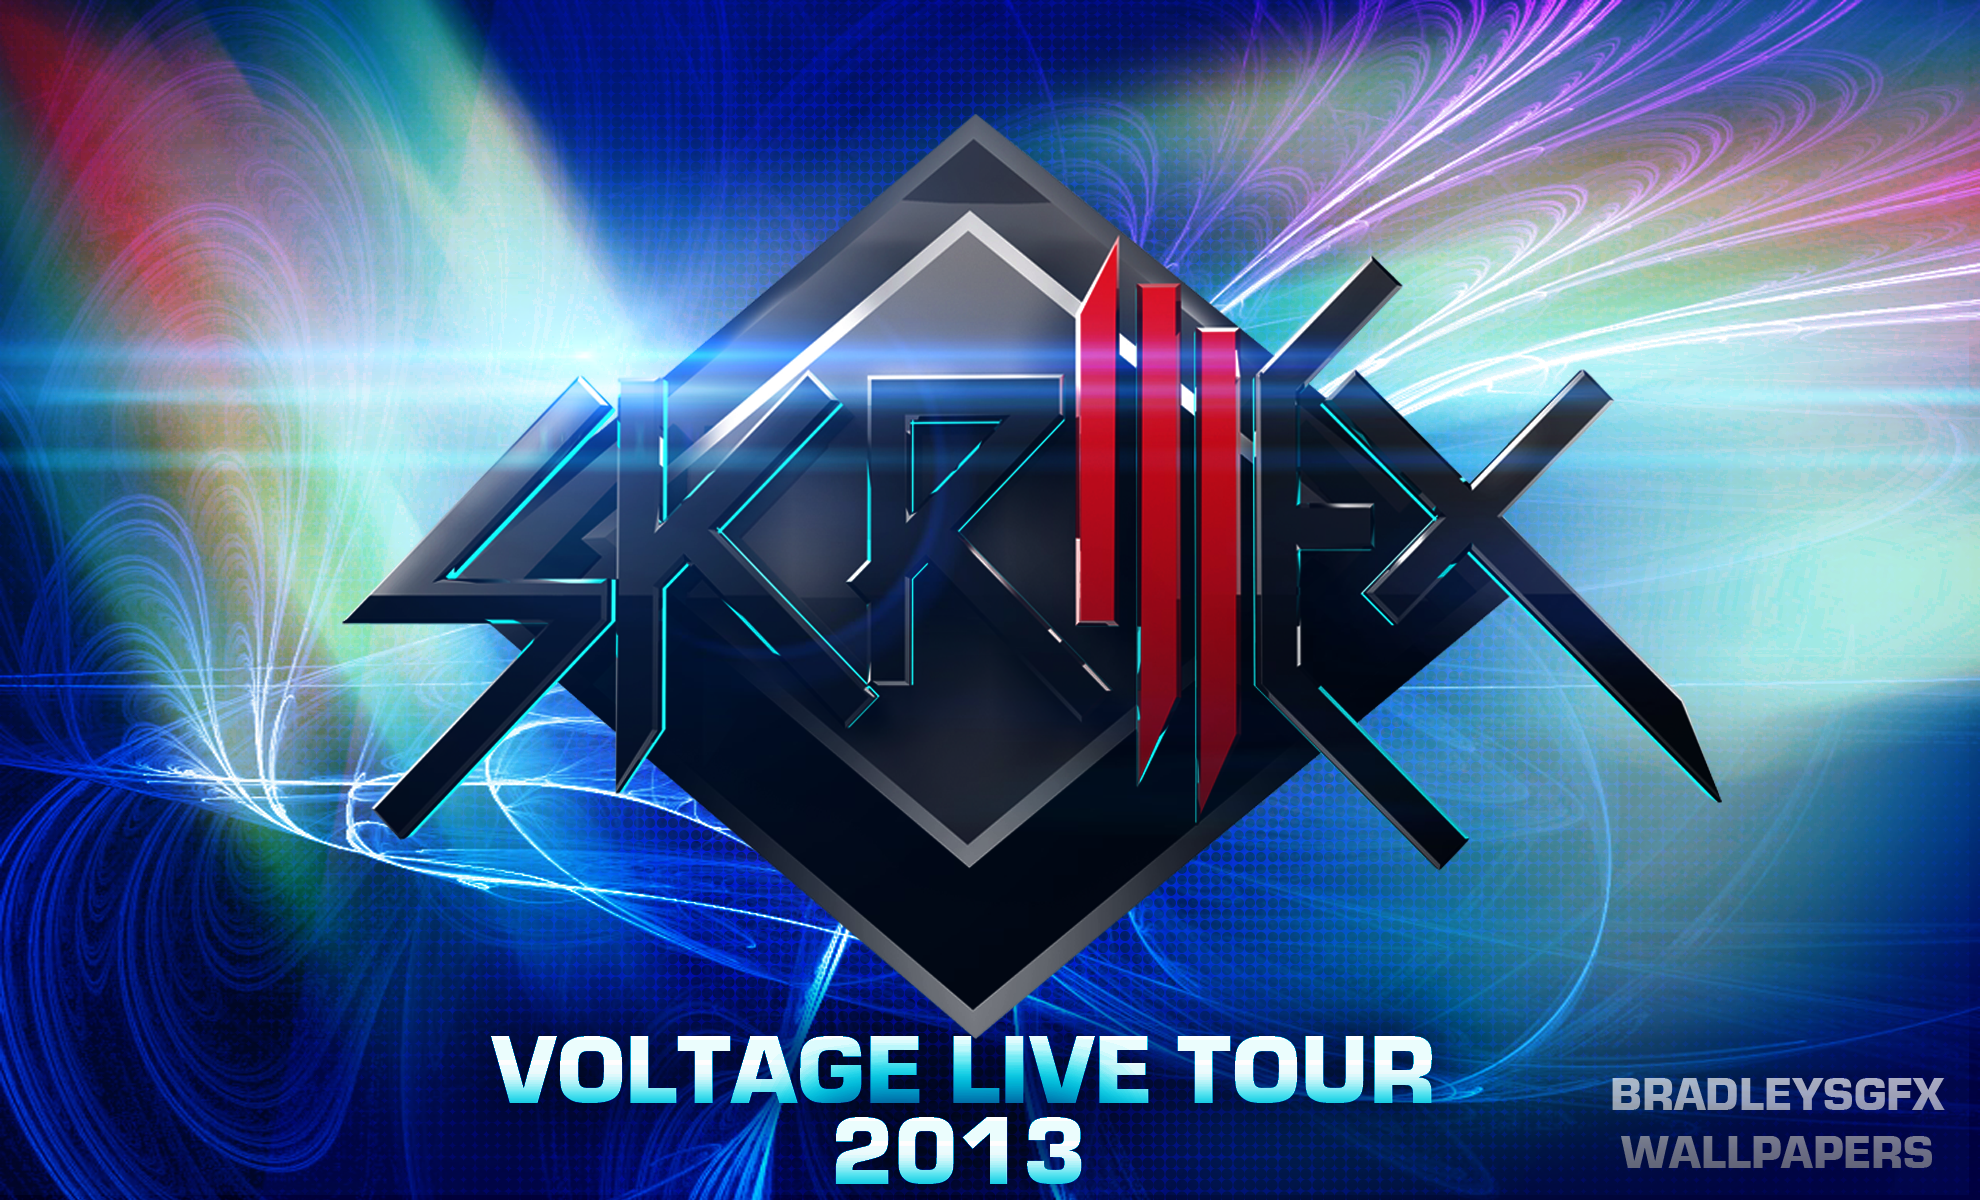 Skrillex Voltage Custom Live Tour Background By Bradleysgfx On